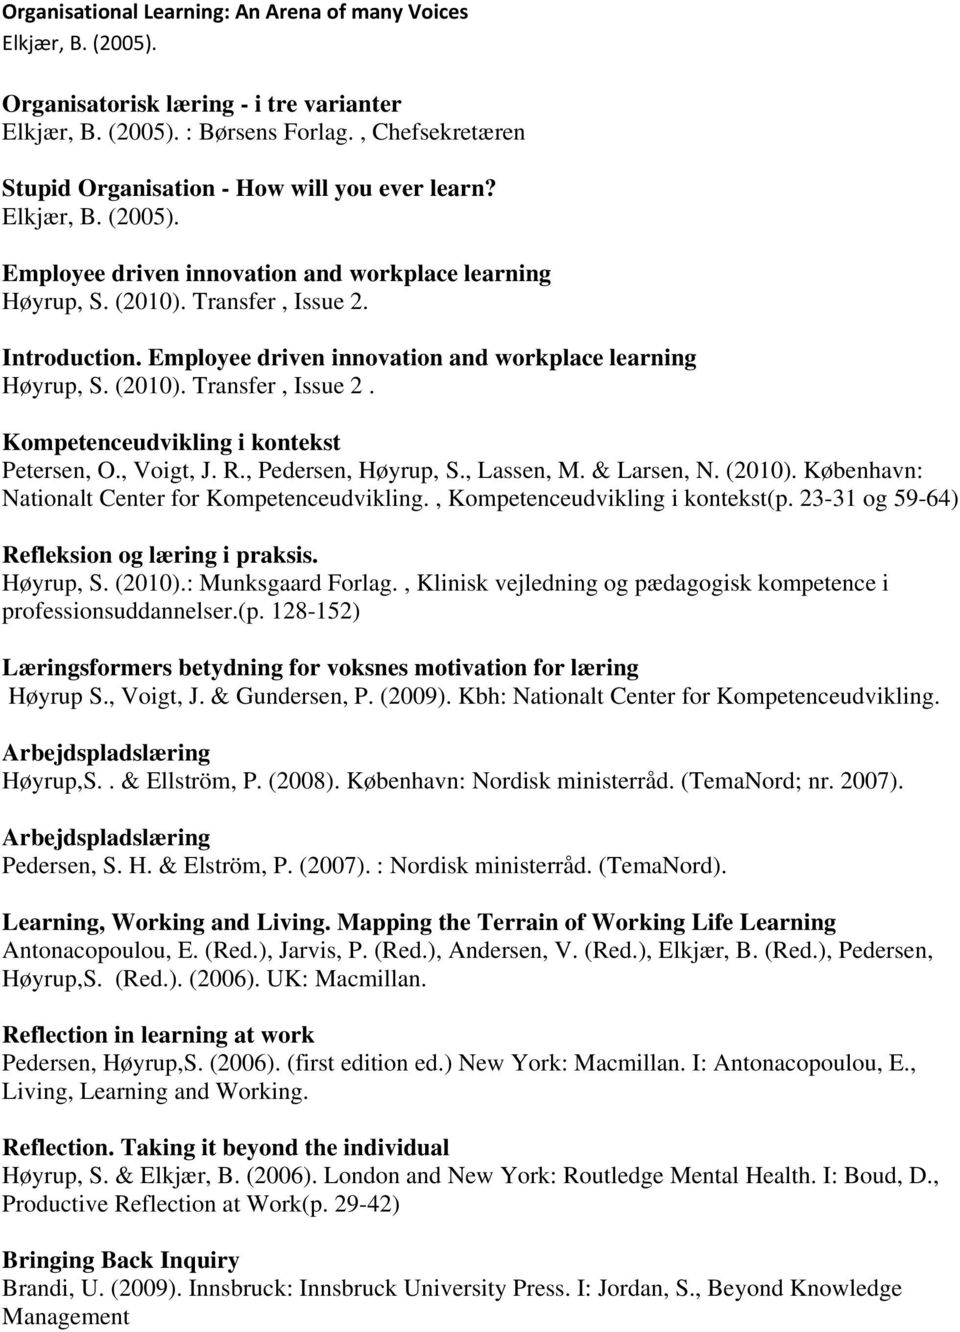 Employee driven innovation and workplace learning Høyrup, S. (2010). Transfer, Issue 2. Kompetenceudvikling i kontekst Petersen, O., Voigt, J. R., Pedersen, Høyrup, S., Lassen, M. & Larsen, N. (2010). København: Nationalt Center for Kompetenceudvikling.